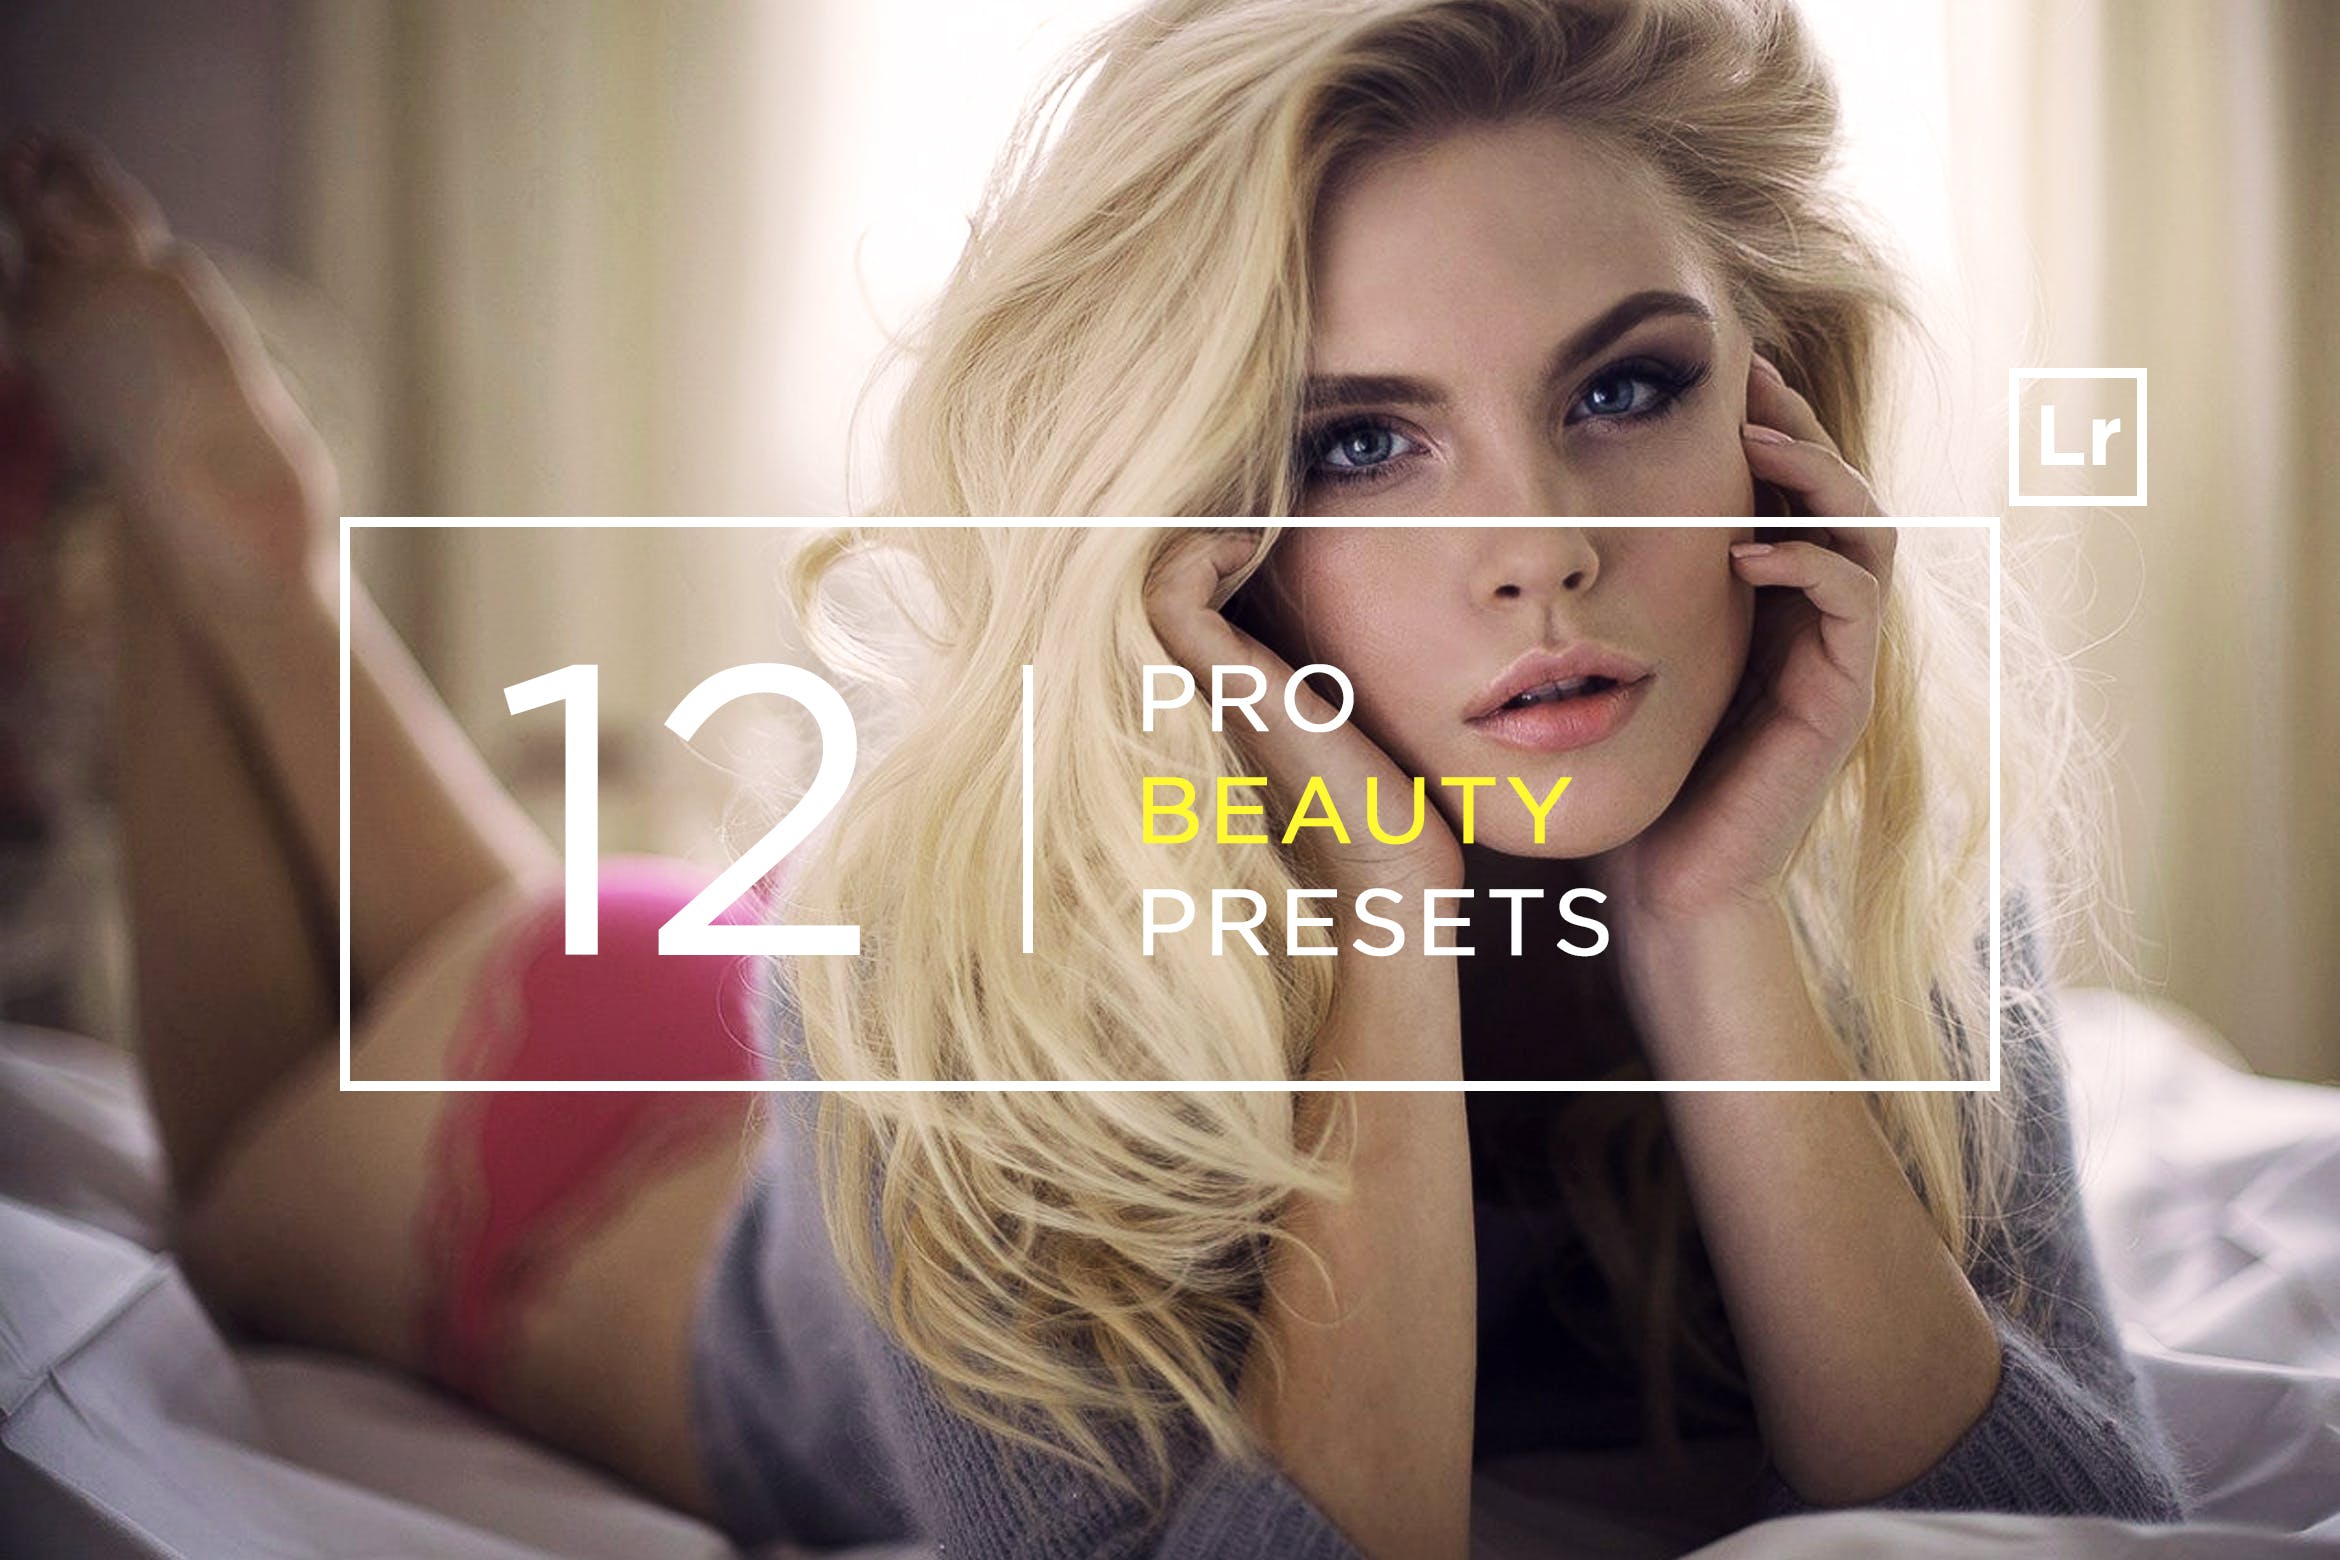 12款超级美颜调色滤镜亿图网易图库精选LR预设 12 Pro Beauty Lightroom Presets插图